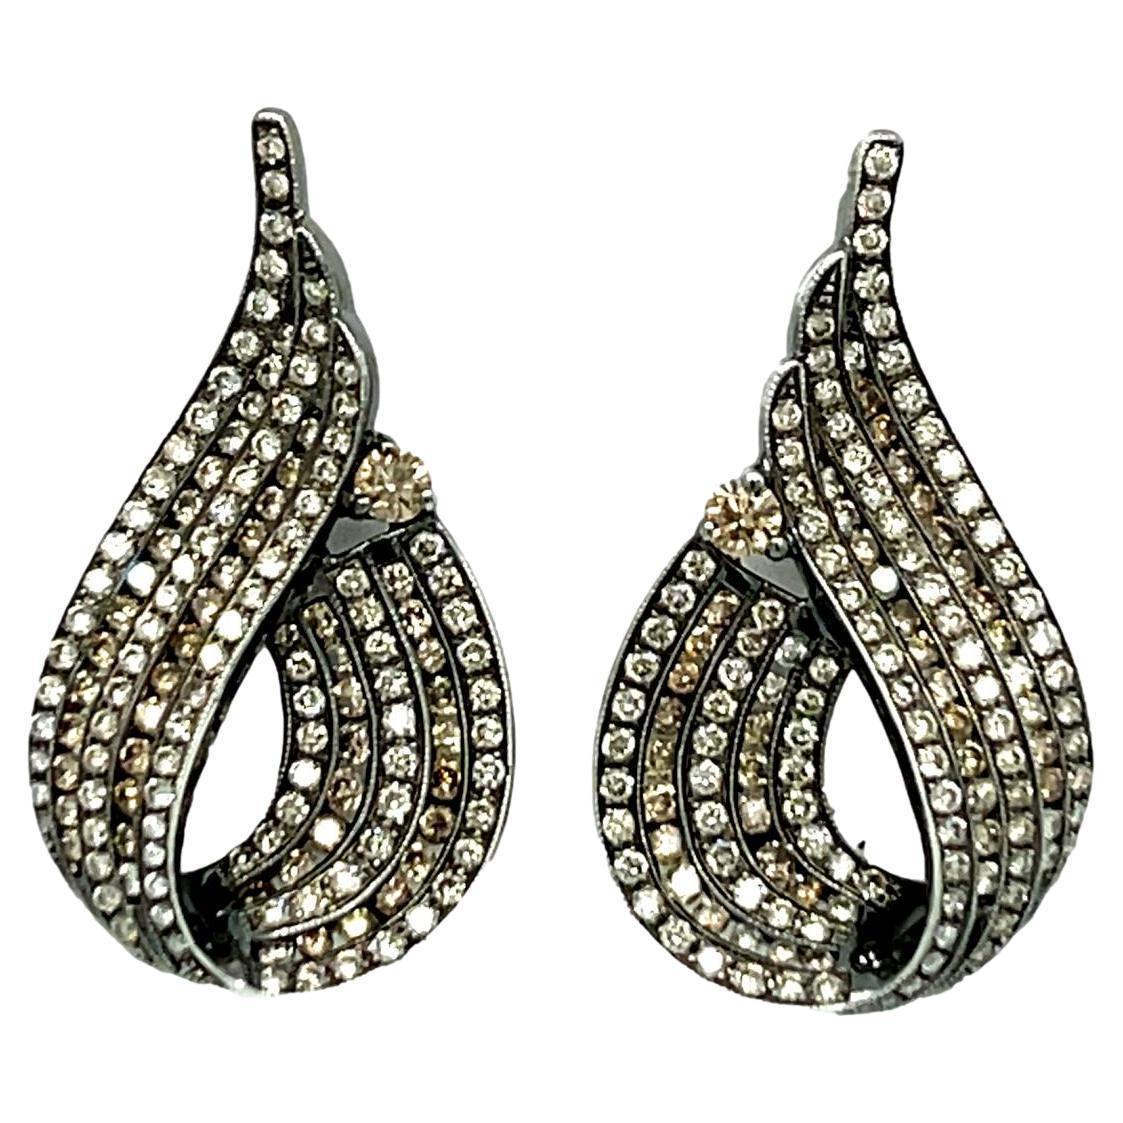 Fancy colored Diamond Dangling Earrings in 18KWB Gold For Sale